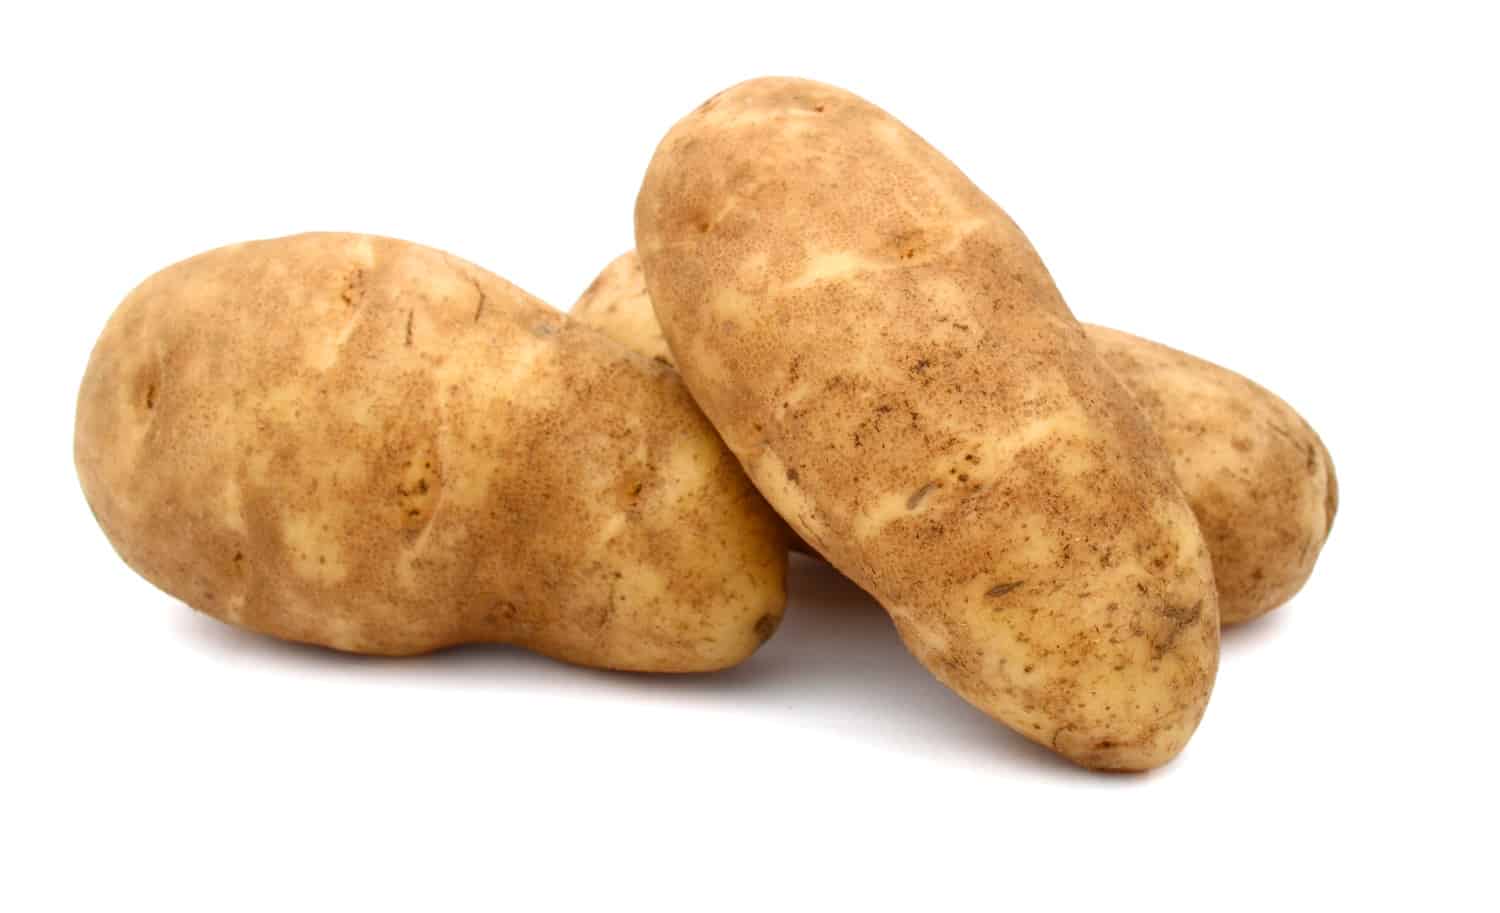 A russet potato (Idaho potato)